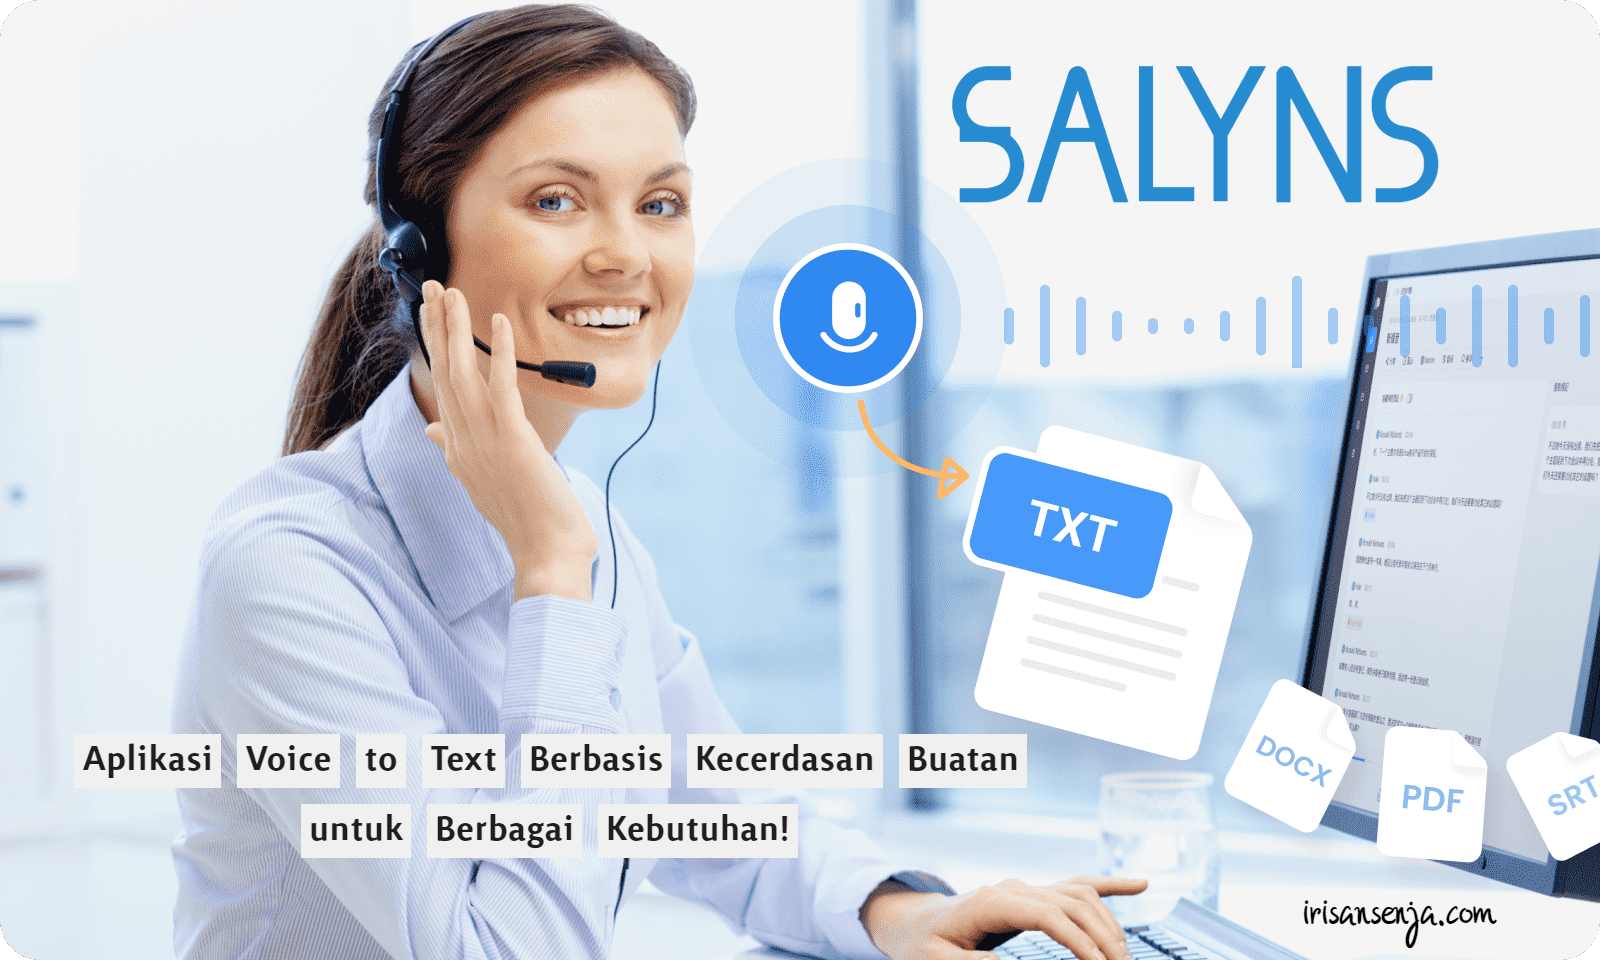 Salyns aplikasi voice to text